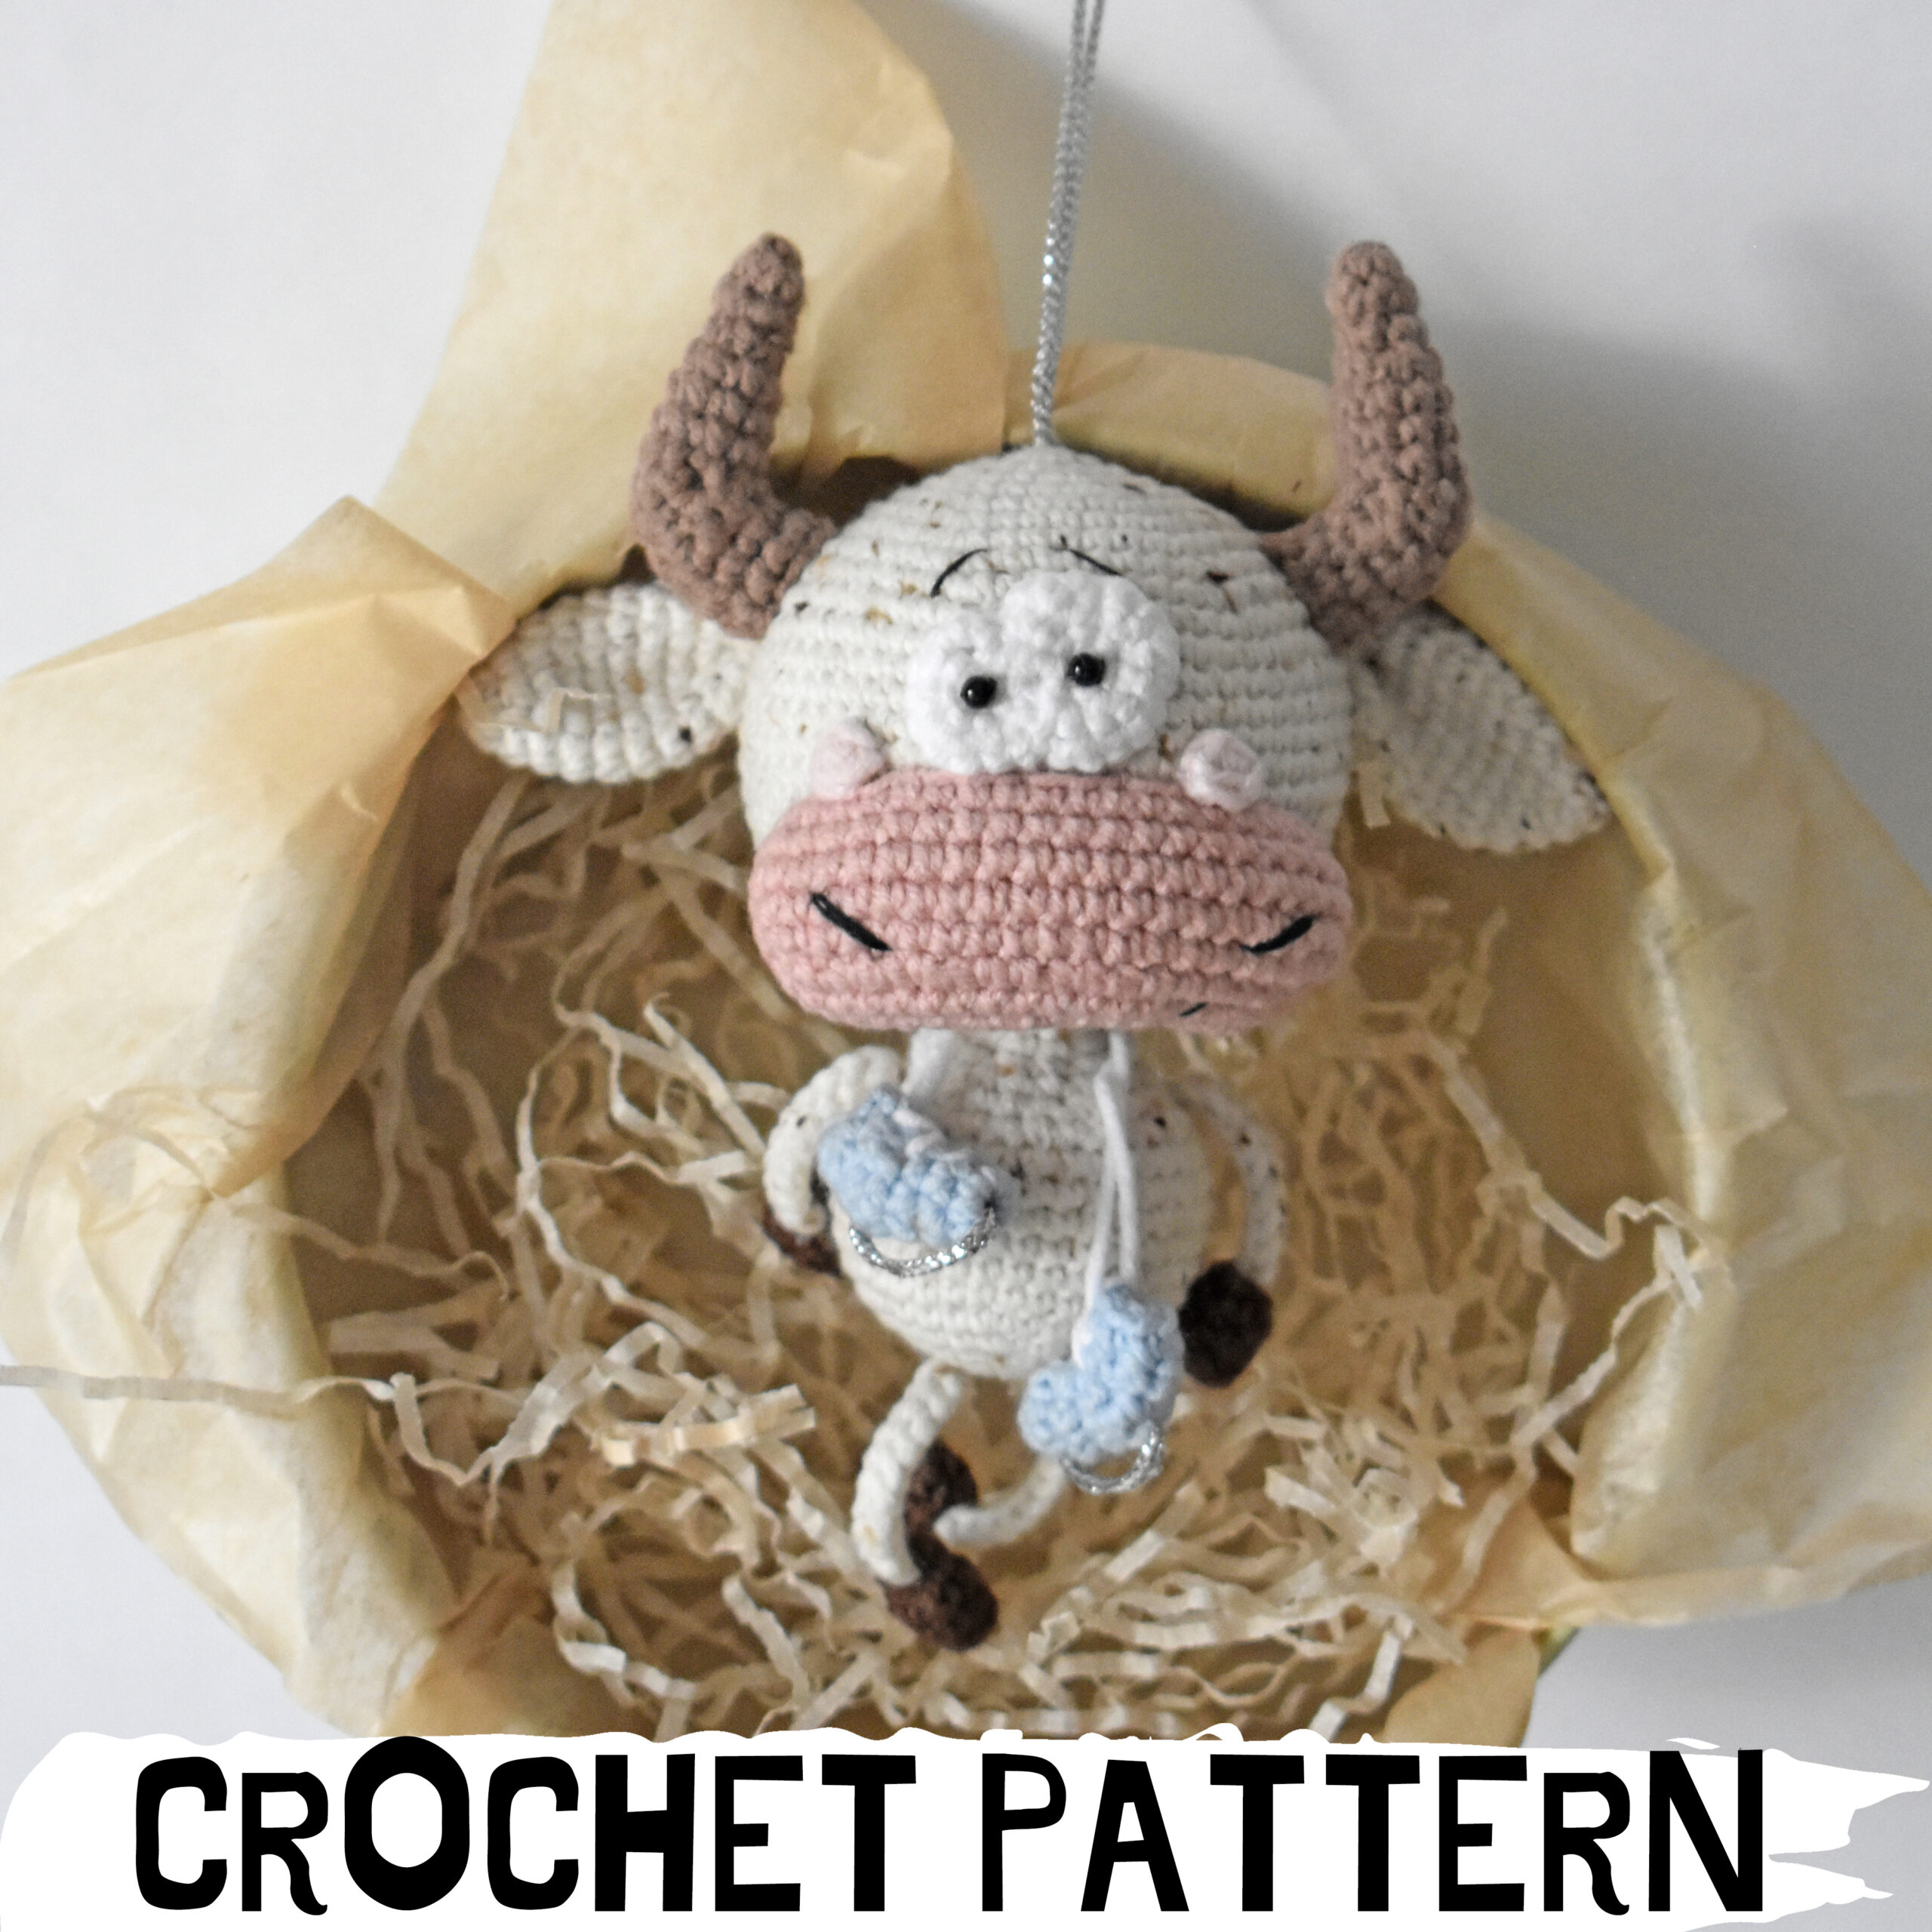 positive poo crochet pattern, poopy crochet - DailyDoll Shop